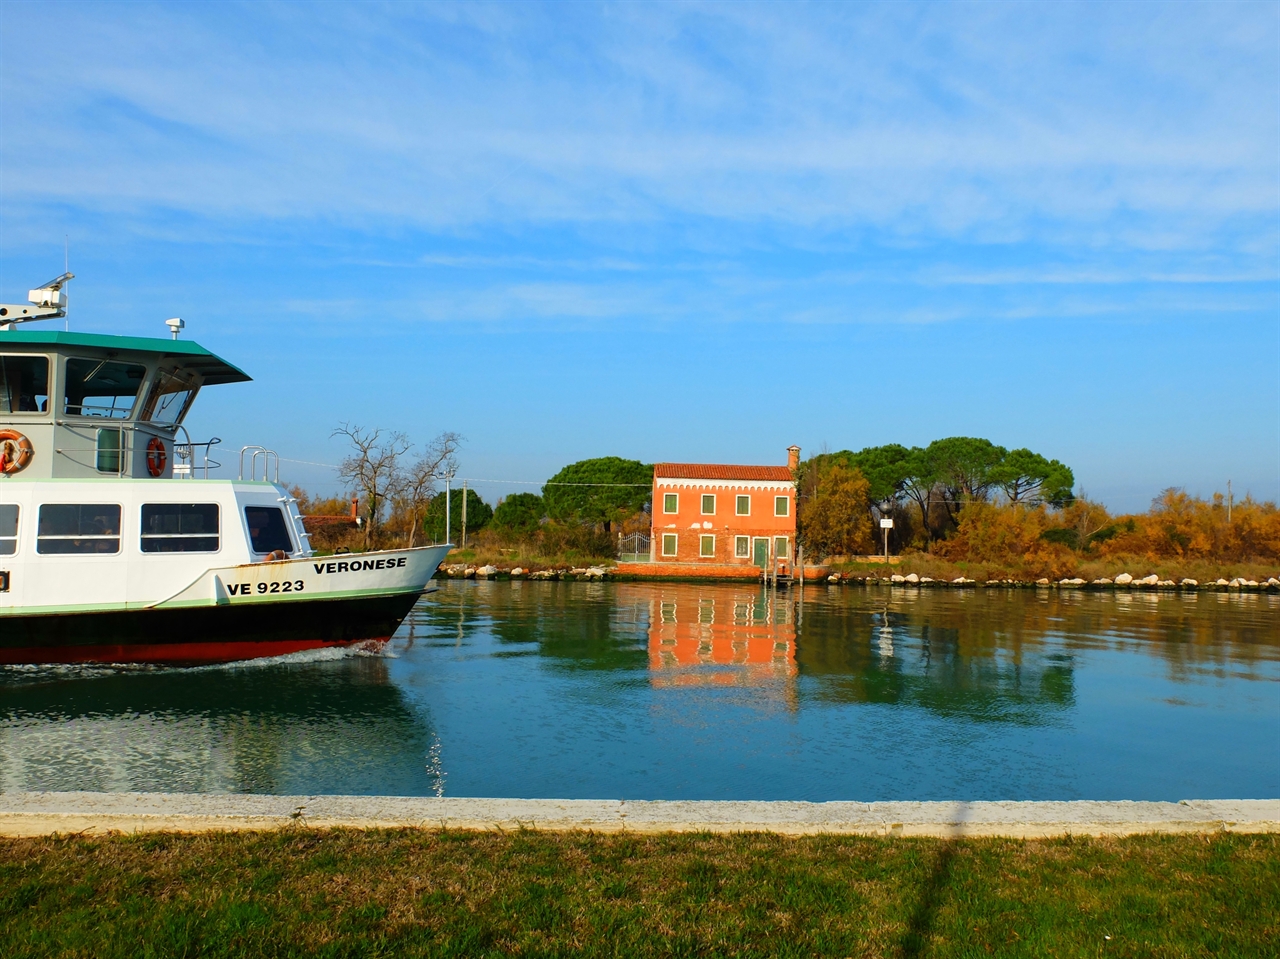 그림 같은 운하를 지나가는 수상 버스인 바포레토. 그 이름도 베네치아 화파의 거장, 베로네세입니다. 저 하늘과 저 운하와 저 건물이 베네치아 화파의 색채의 근원입니다. 